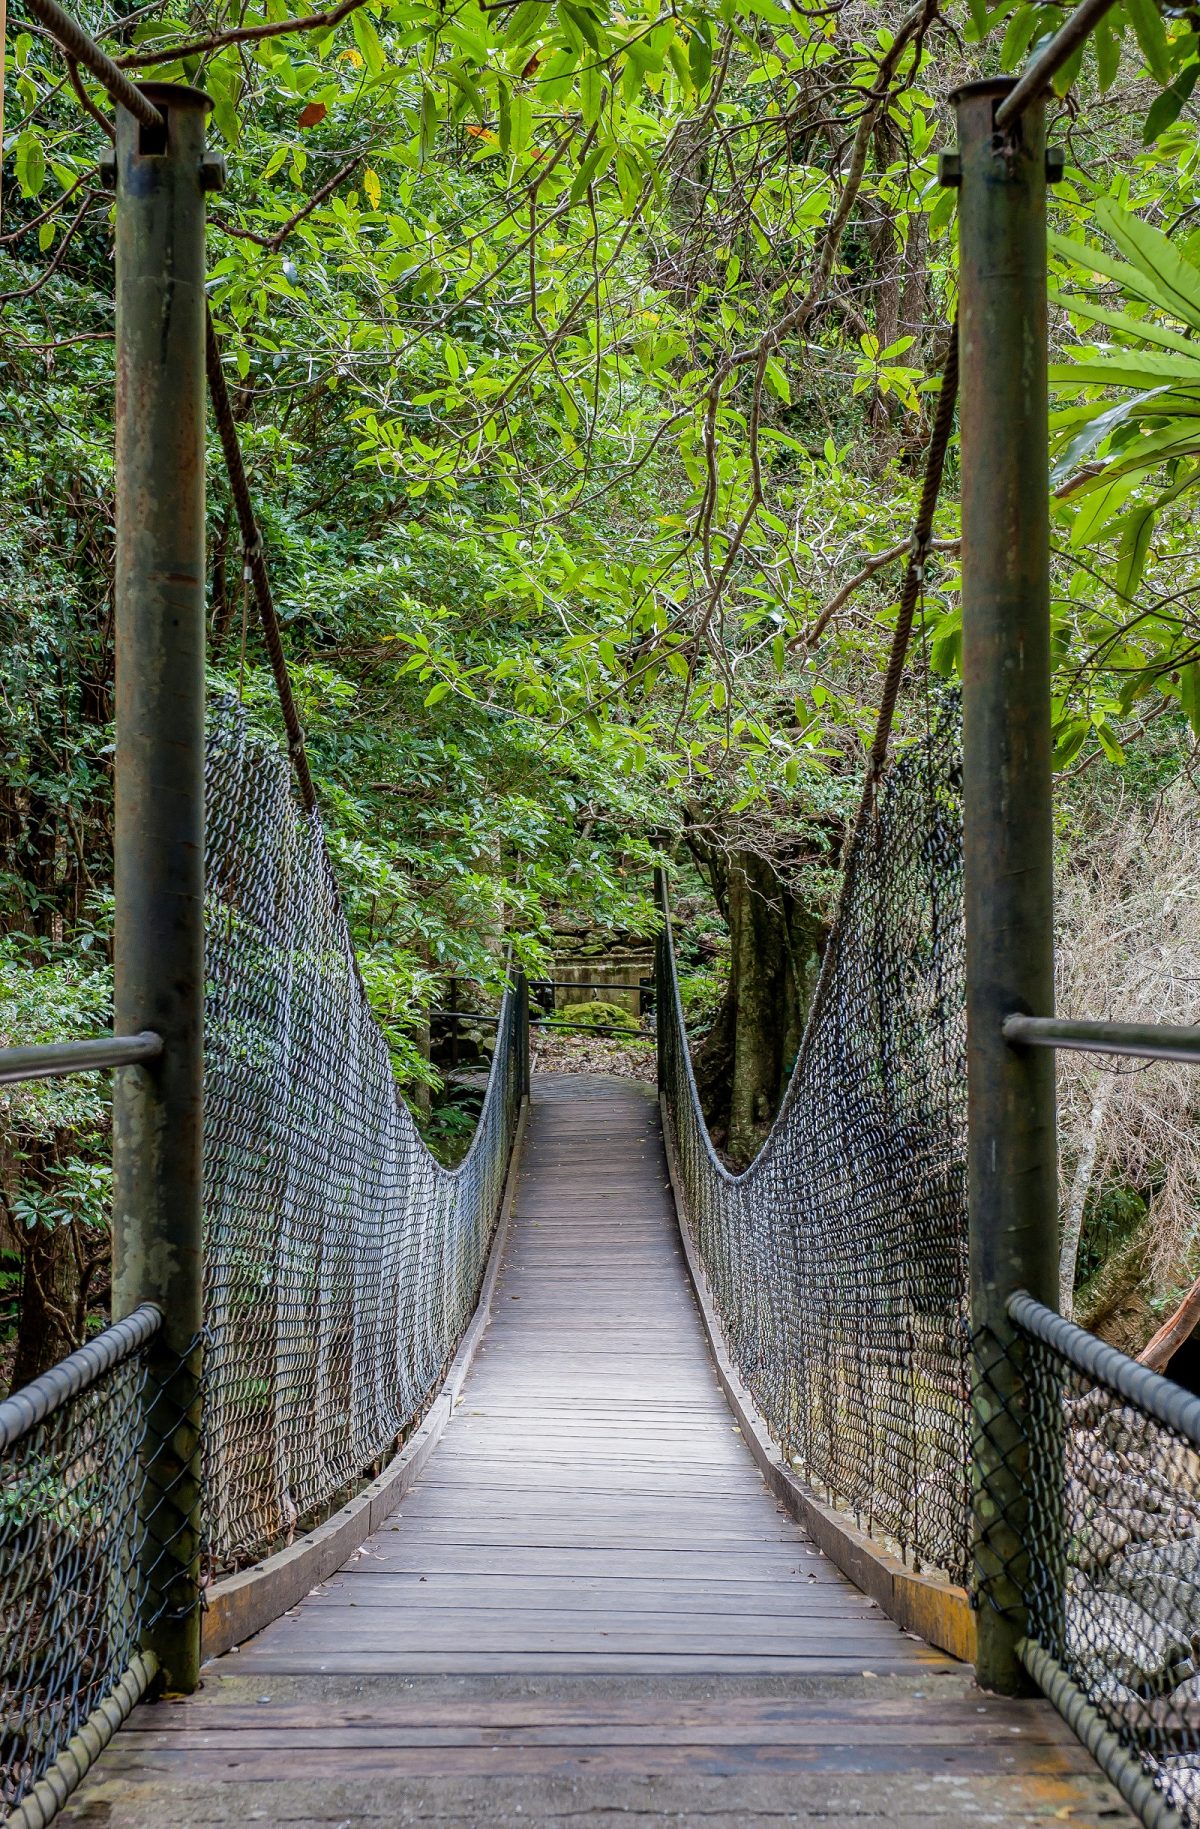 Suspension bridge of the Rainforest loop walk in Budderoo National Park. Photo: Michael Van Ewijk/DPIE